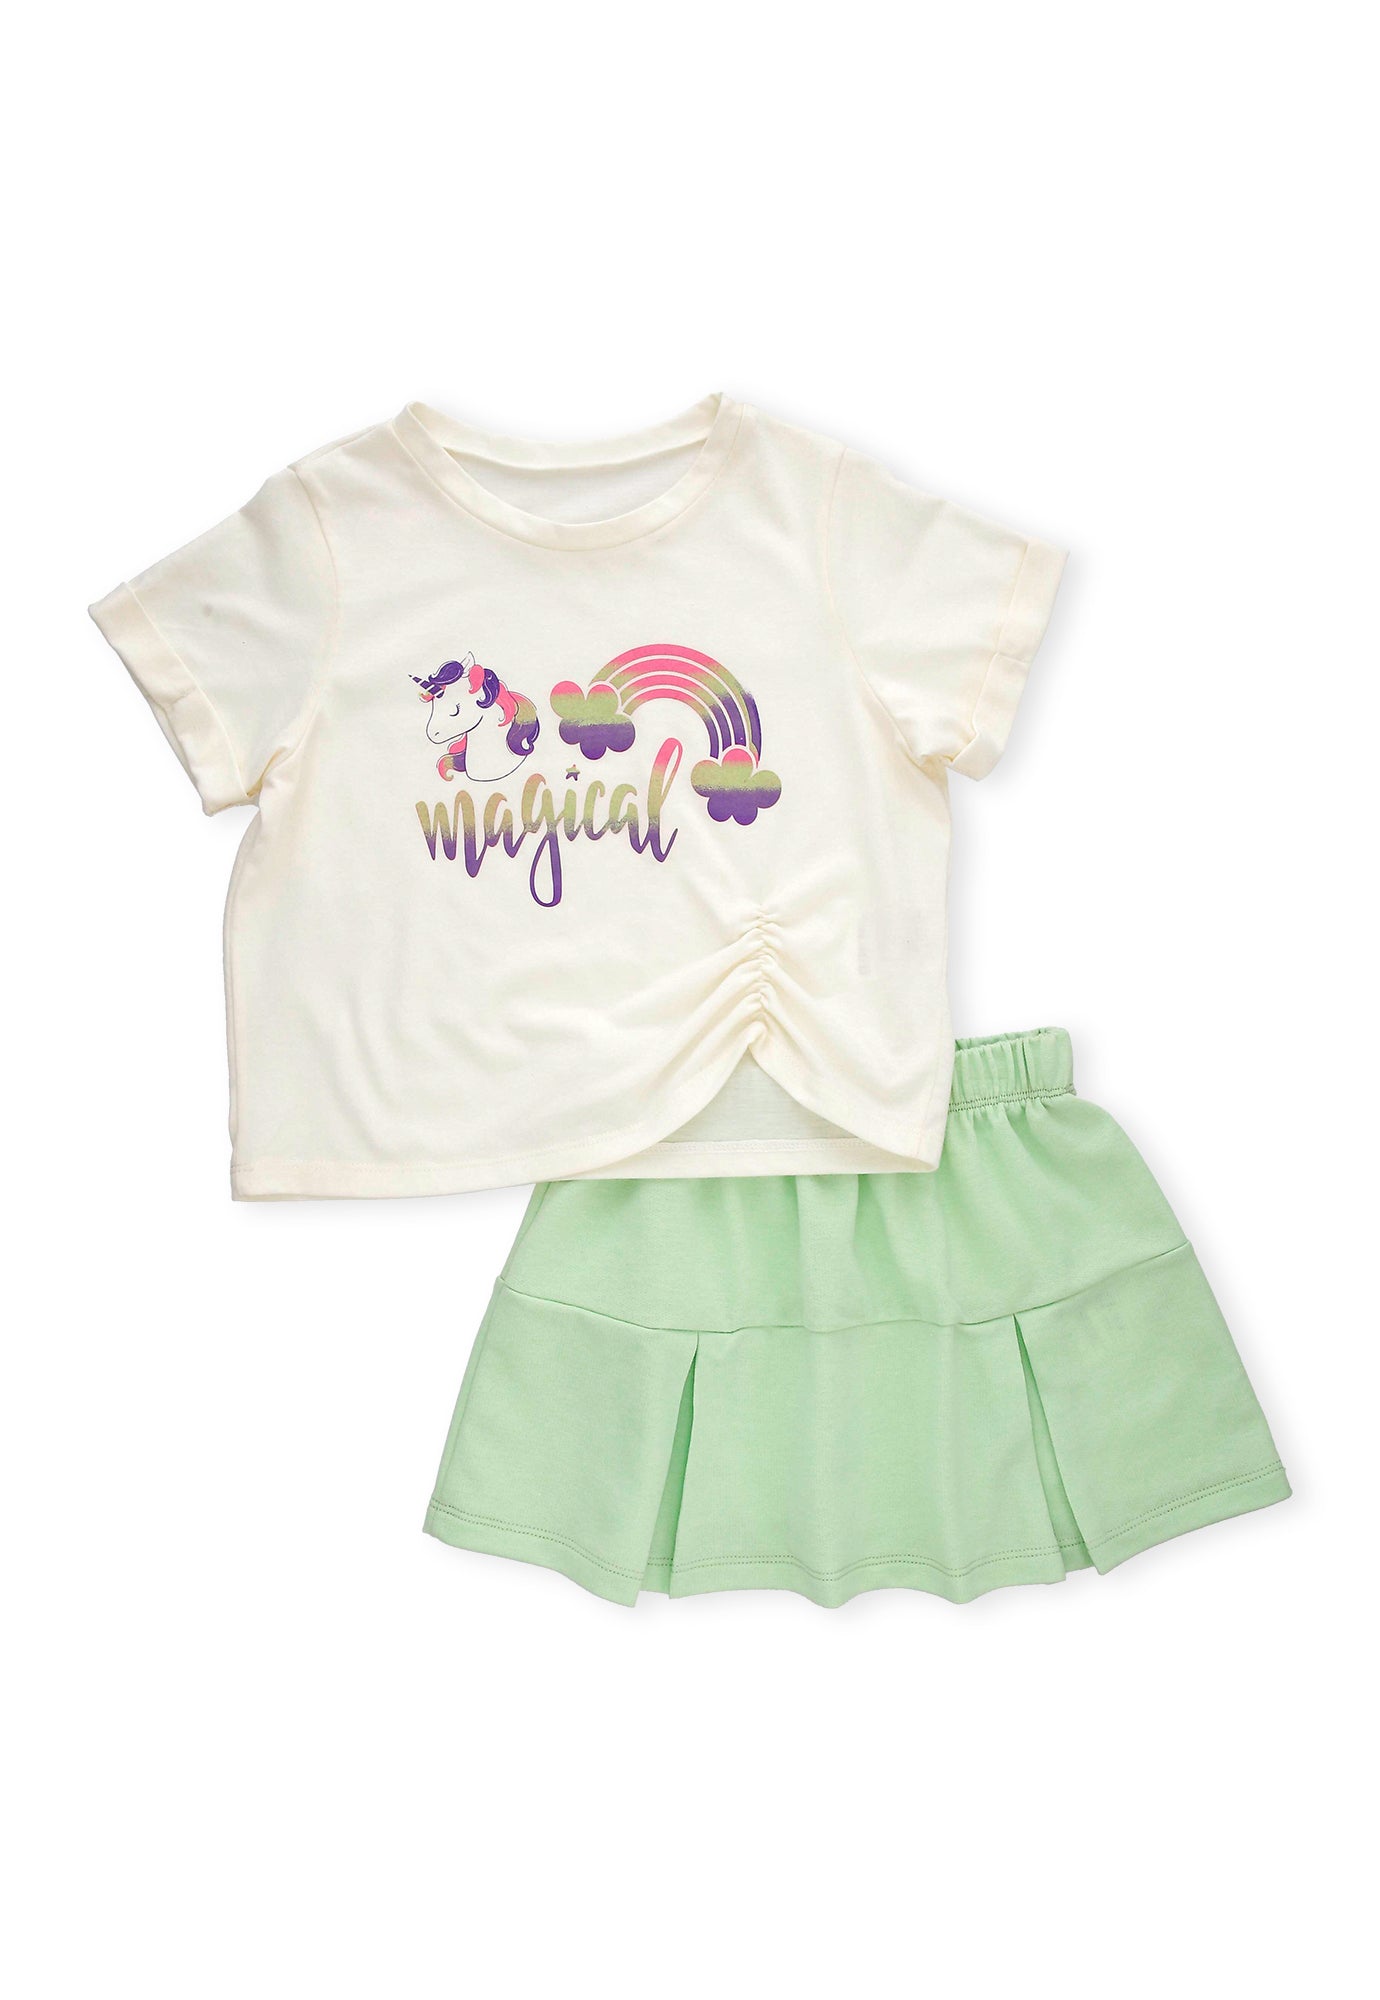 Conjunto de camiseta ivory estampada manga corta y falda corta verde para bebé niña